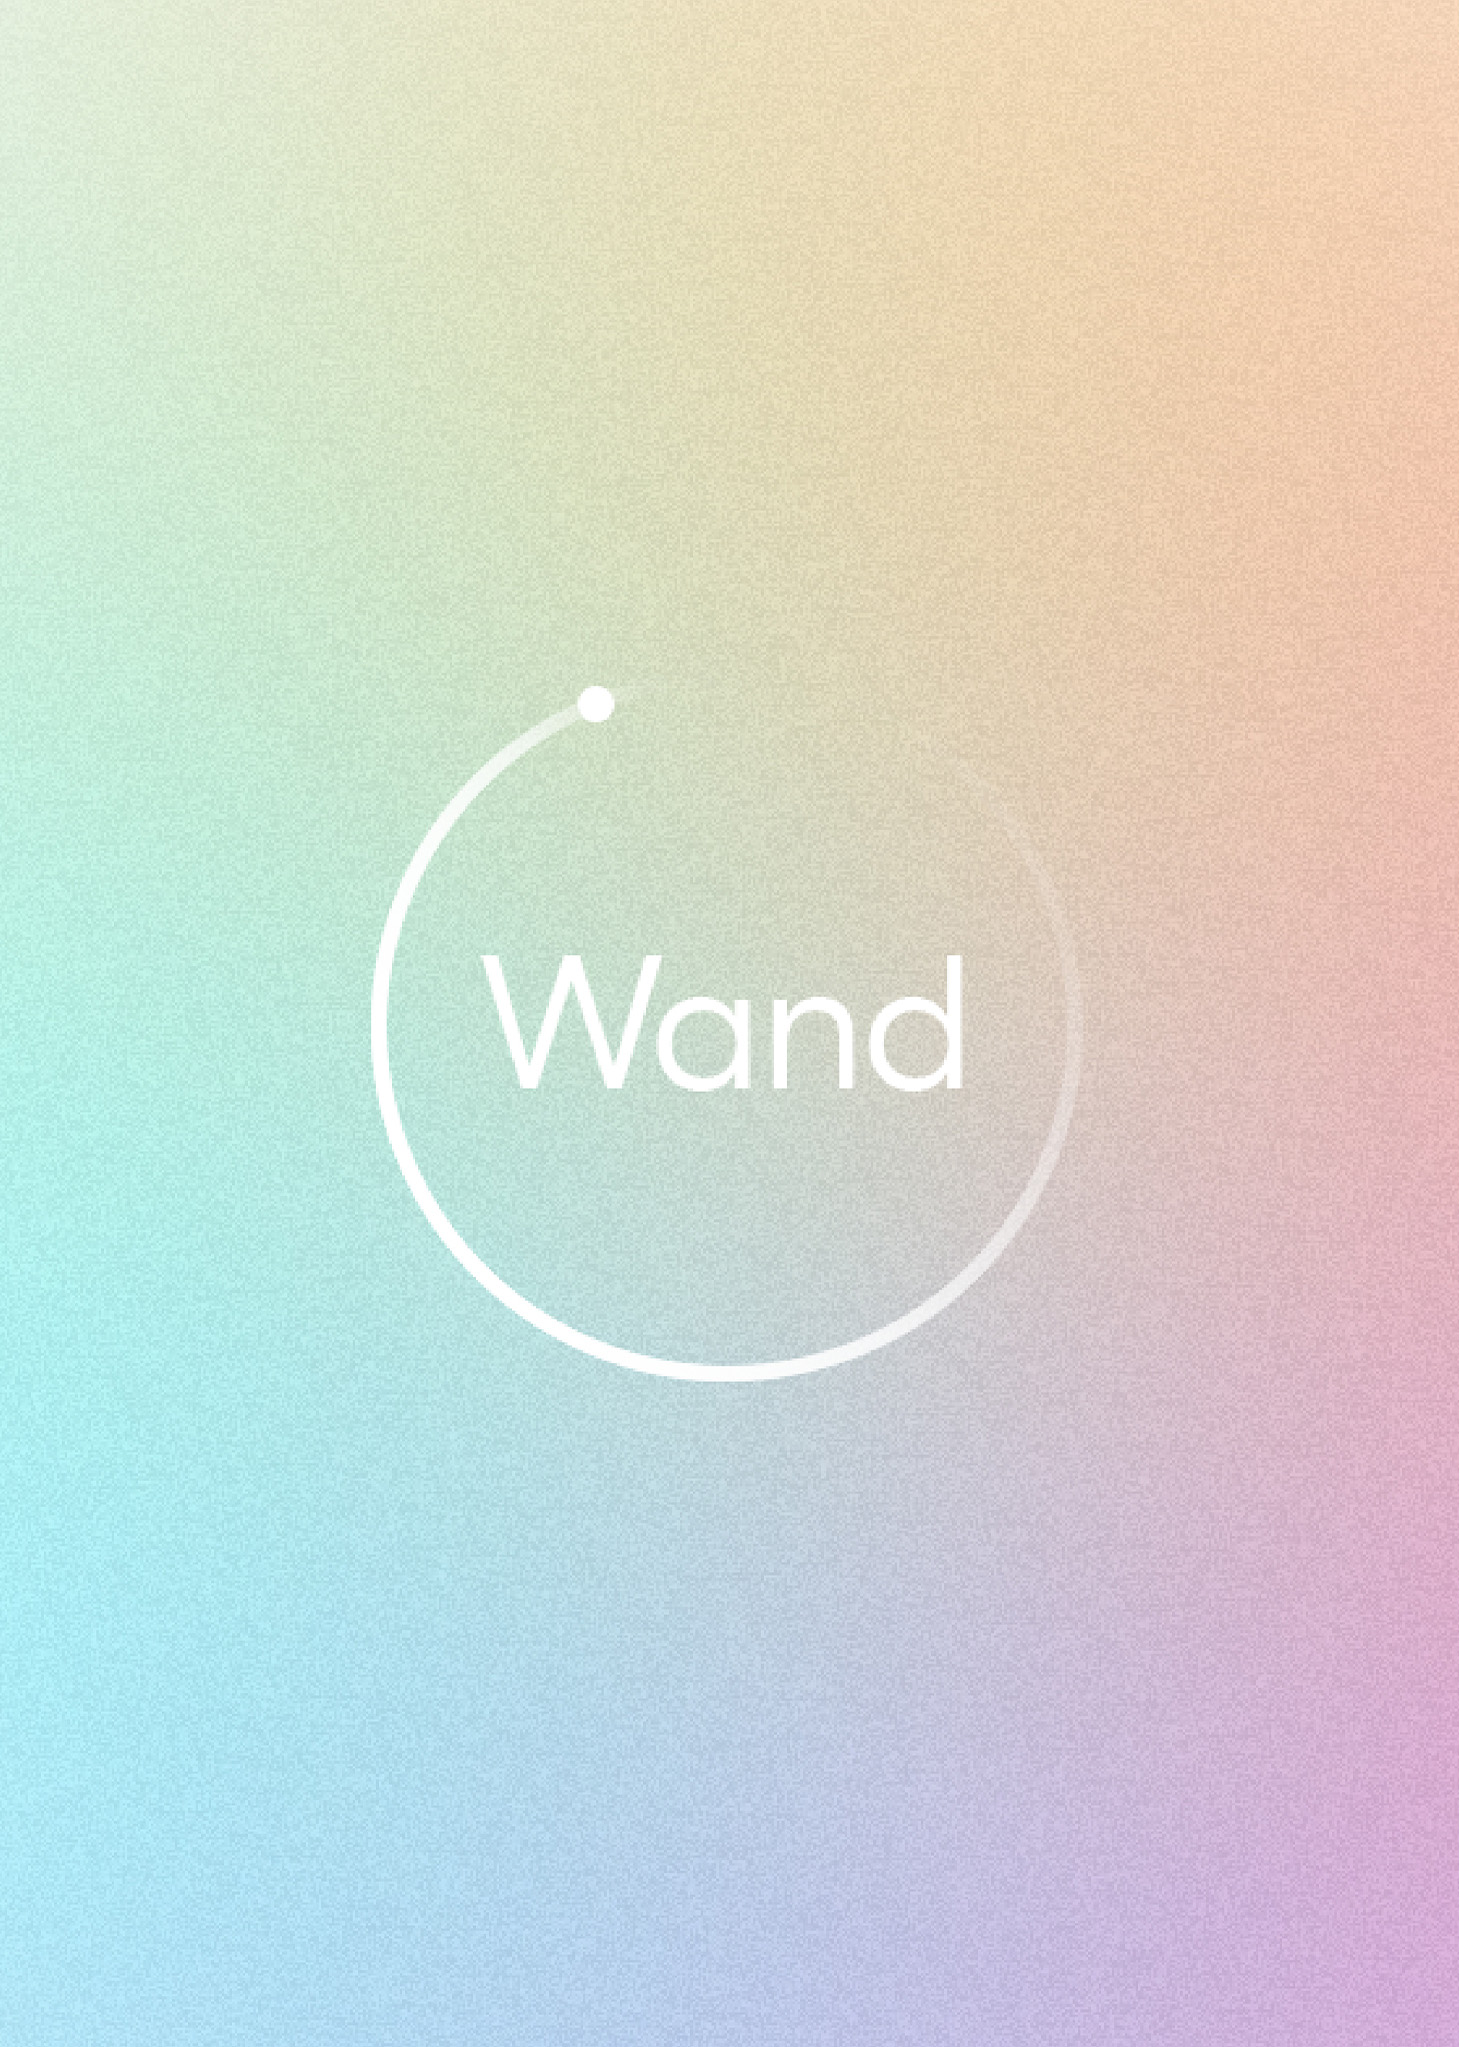 Wand - Smart home